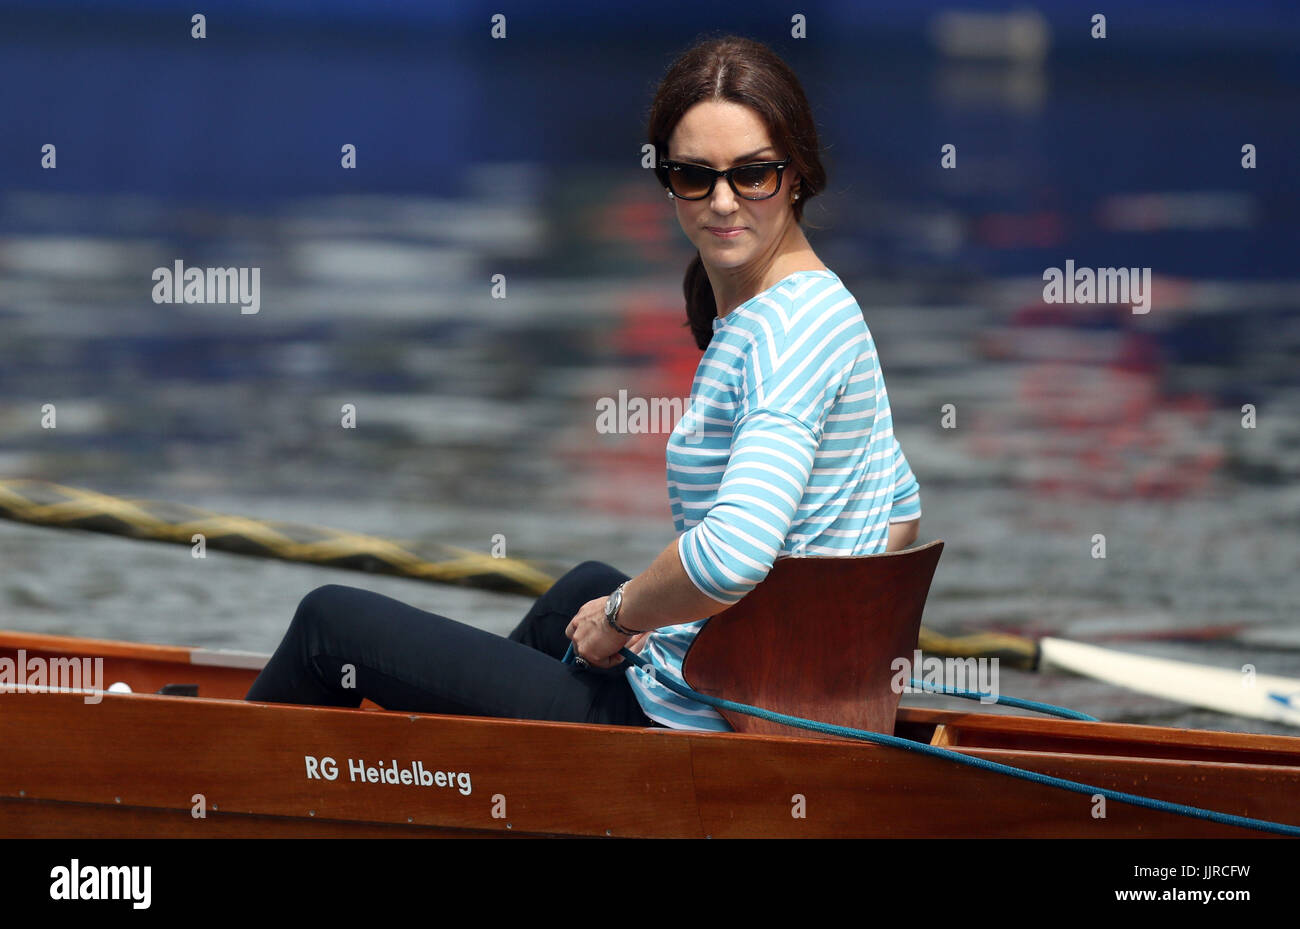 La duchesse de Cambridge prend part à une compétition d'aviron sur la rivière Neckar lors de leur visite à Heidelberg le deuxième jour de leur visite de trois jours en Allemagne. Banque D'Images